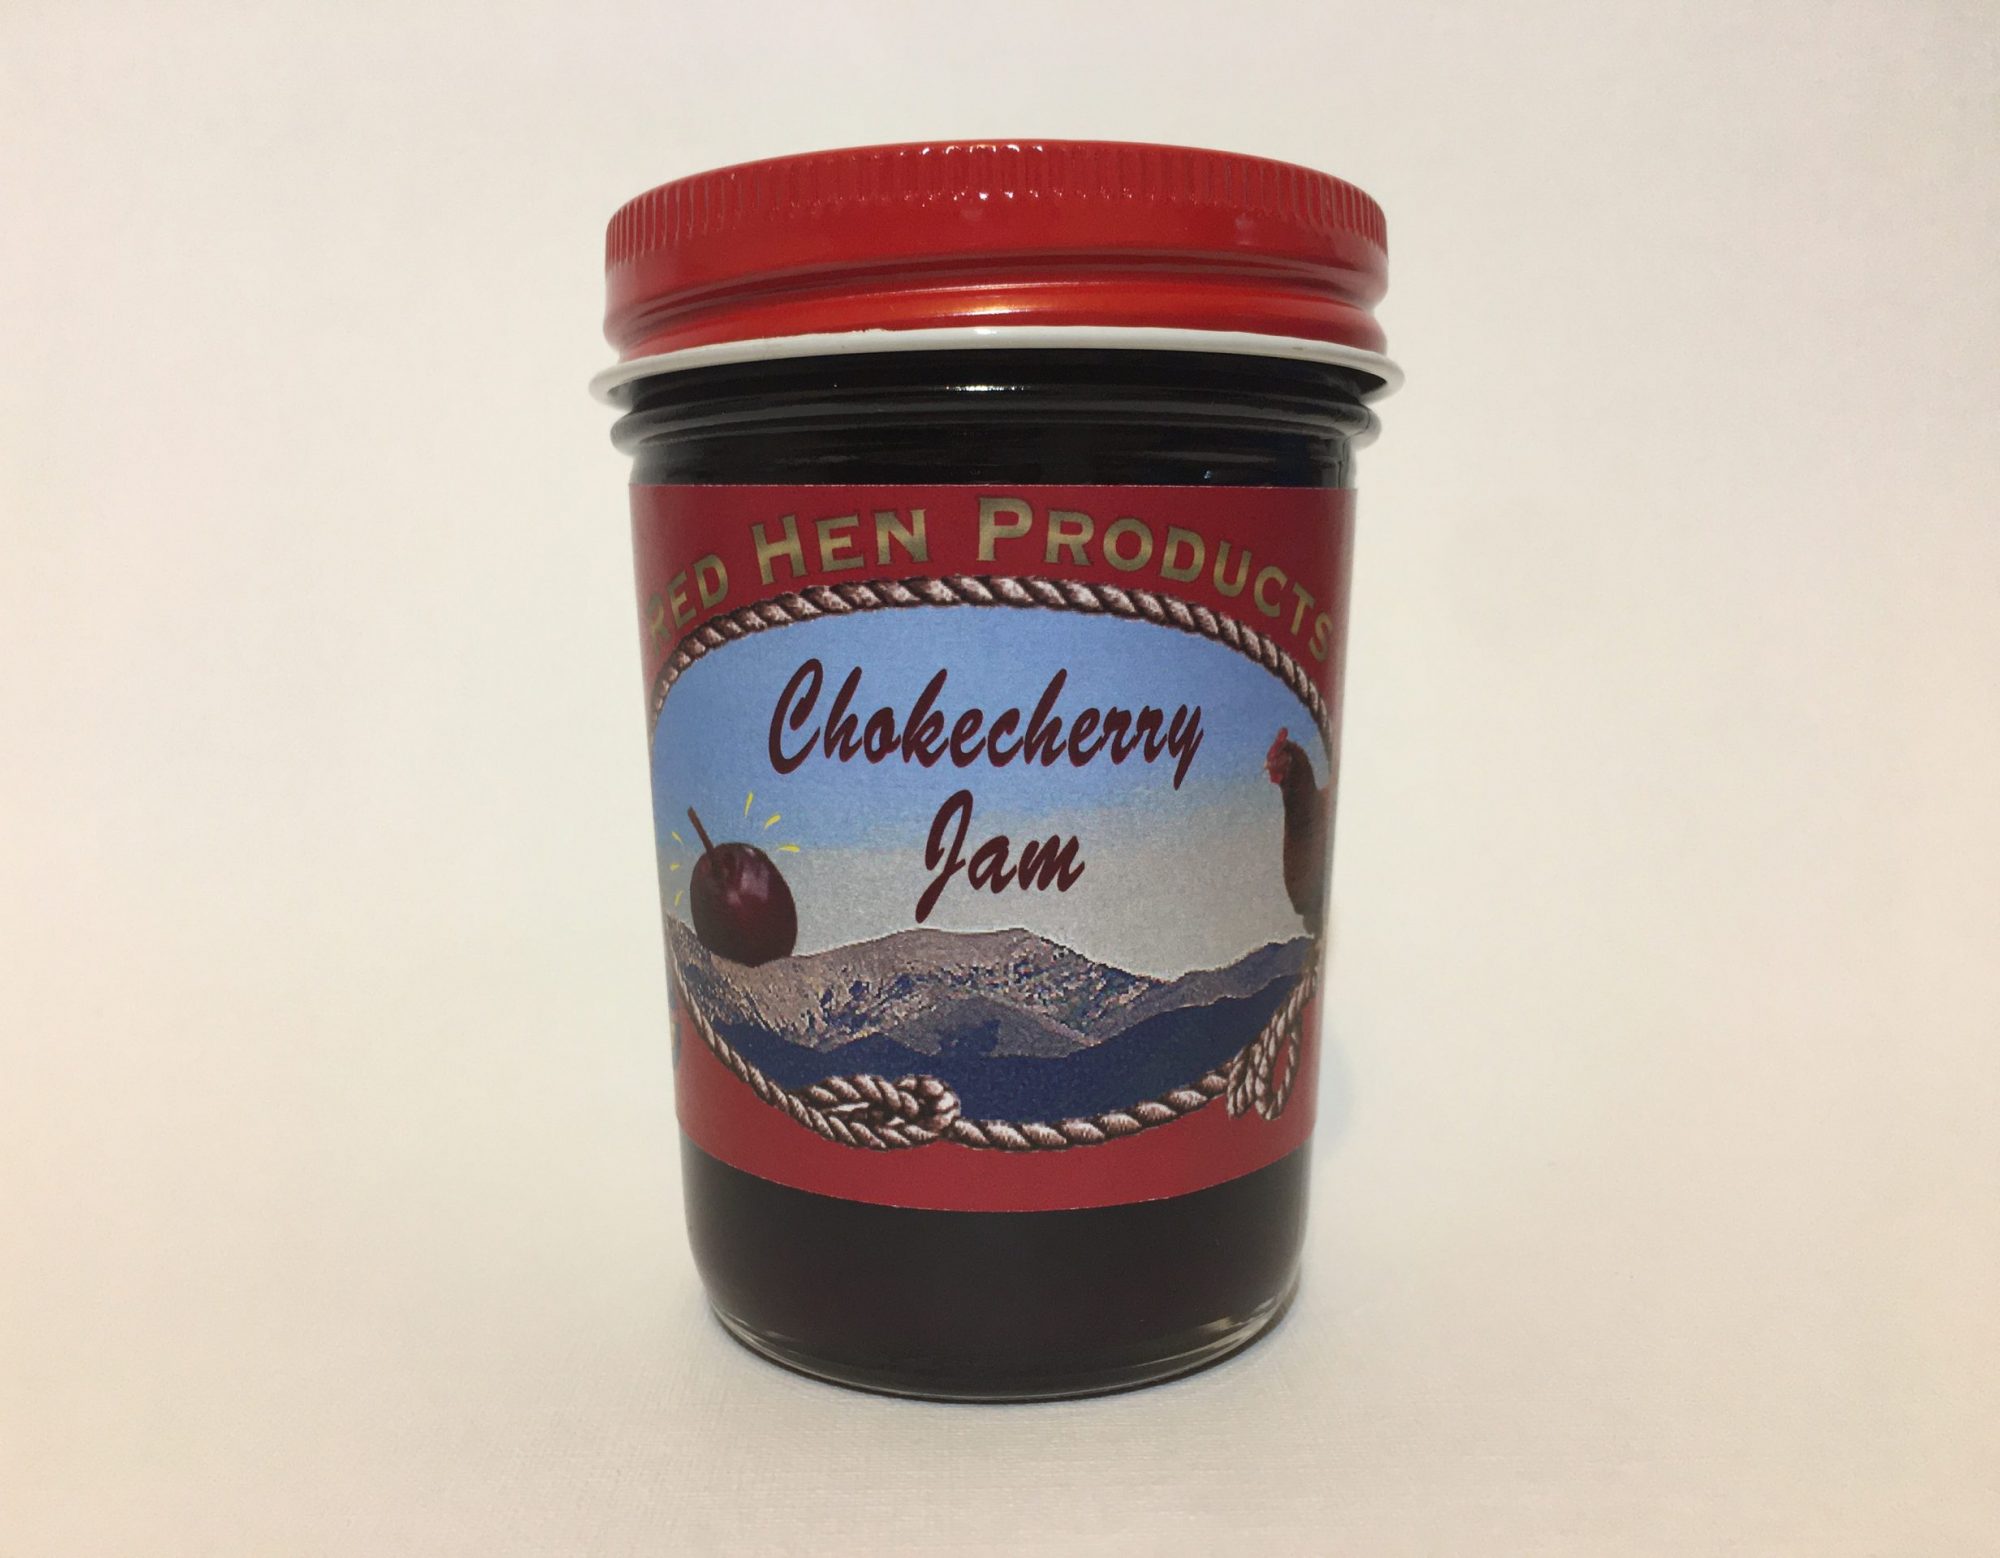 Chokecherry Jam